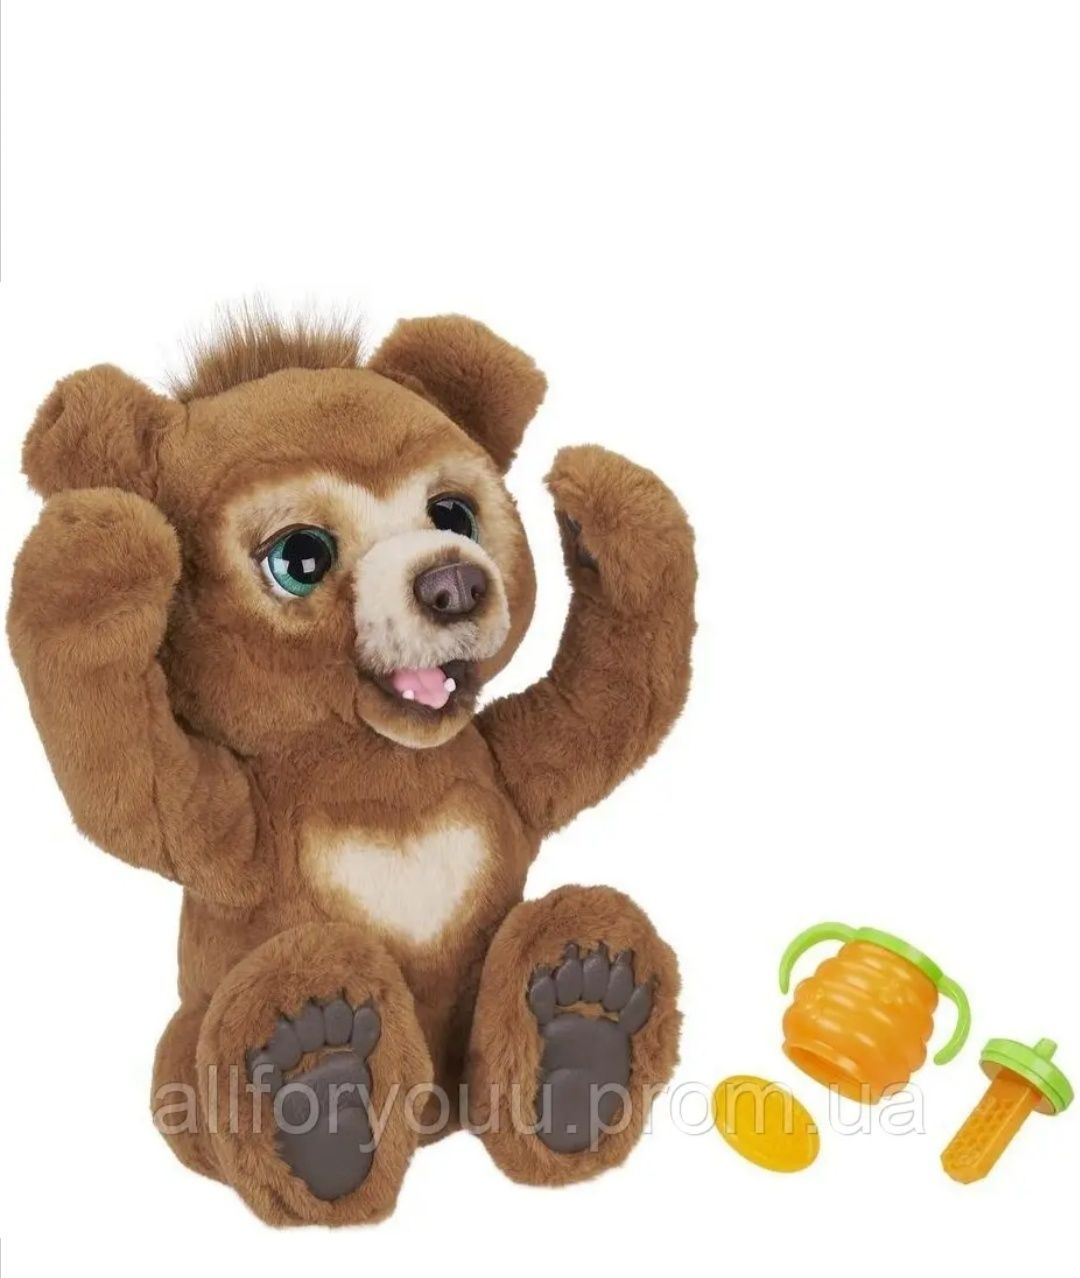 Медведь Кабби игрушка